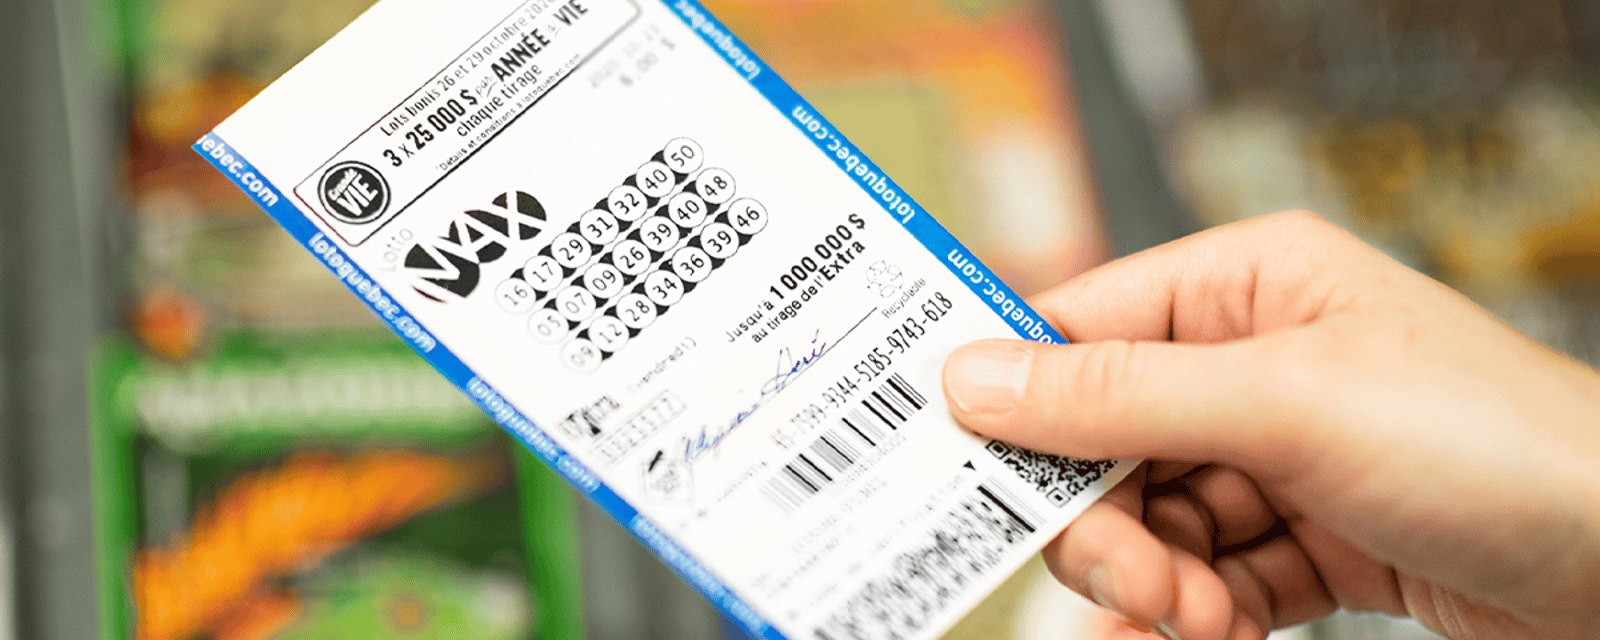 Un gros lot de 70 millions $ du Lotto Max n'a pas été réclamé au bout d’un an